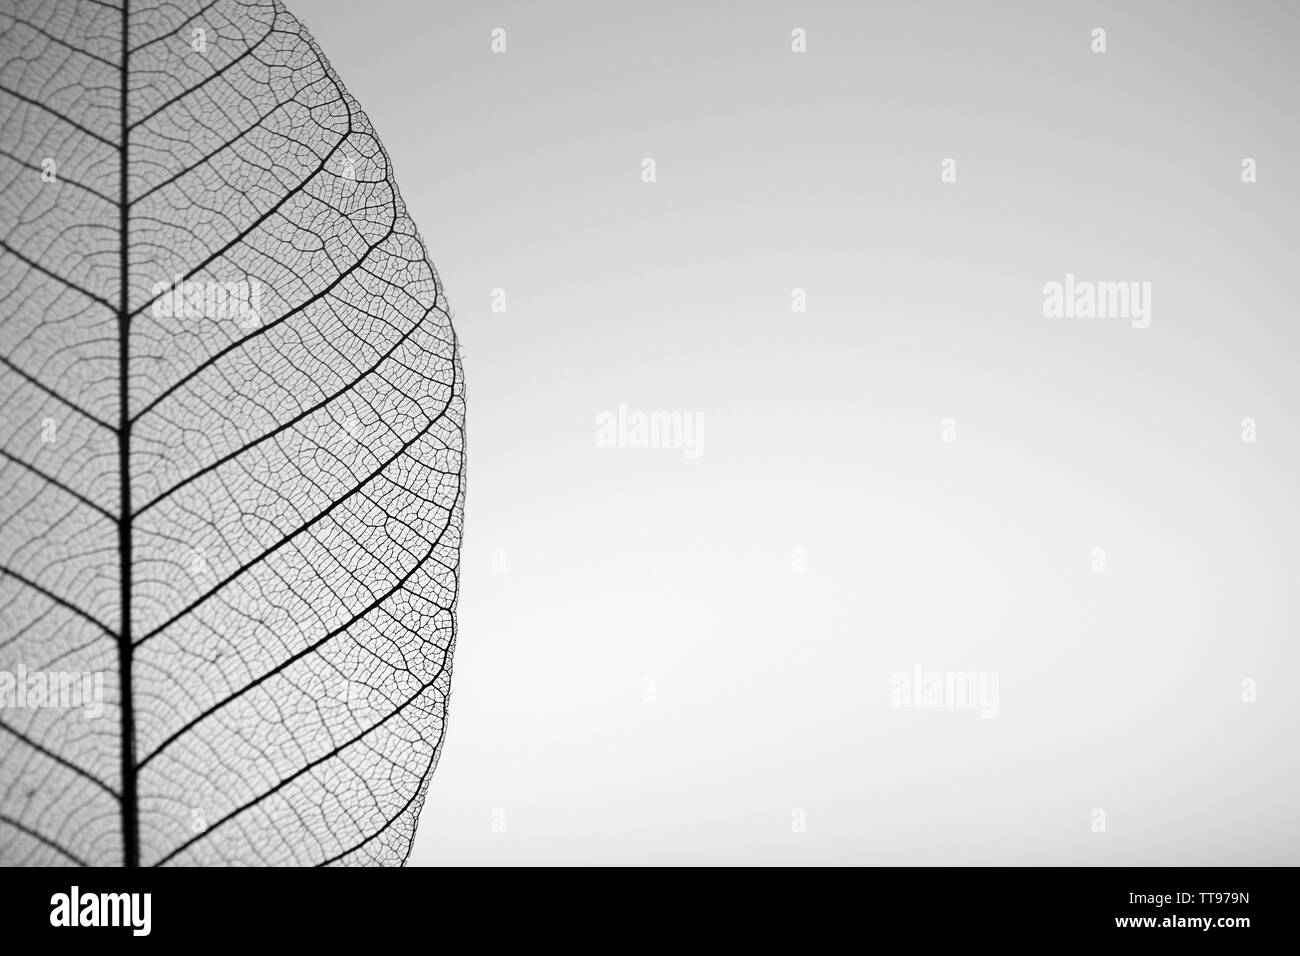 Skeleton leaf on grey background, close up Stock Photo